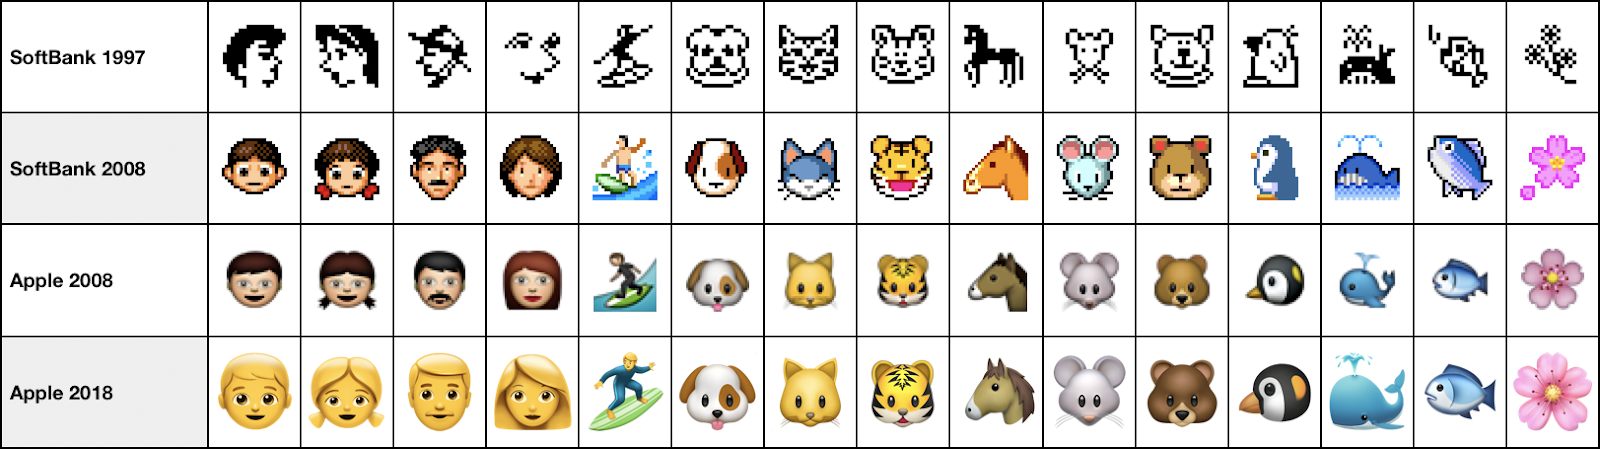 evolução dos emojis